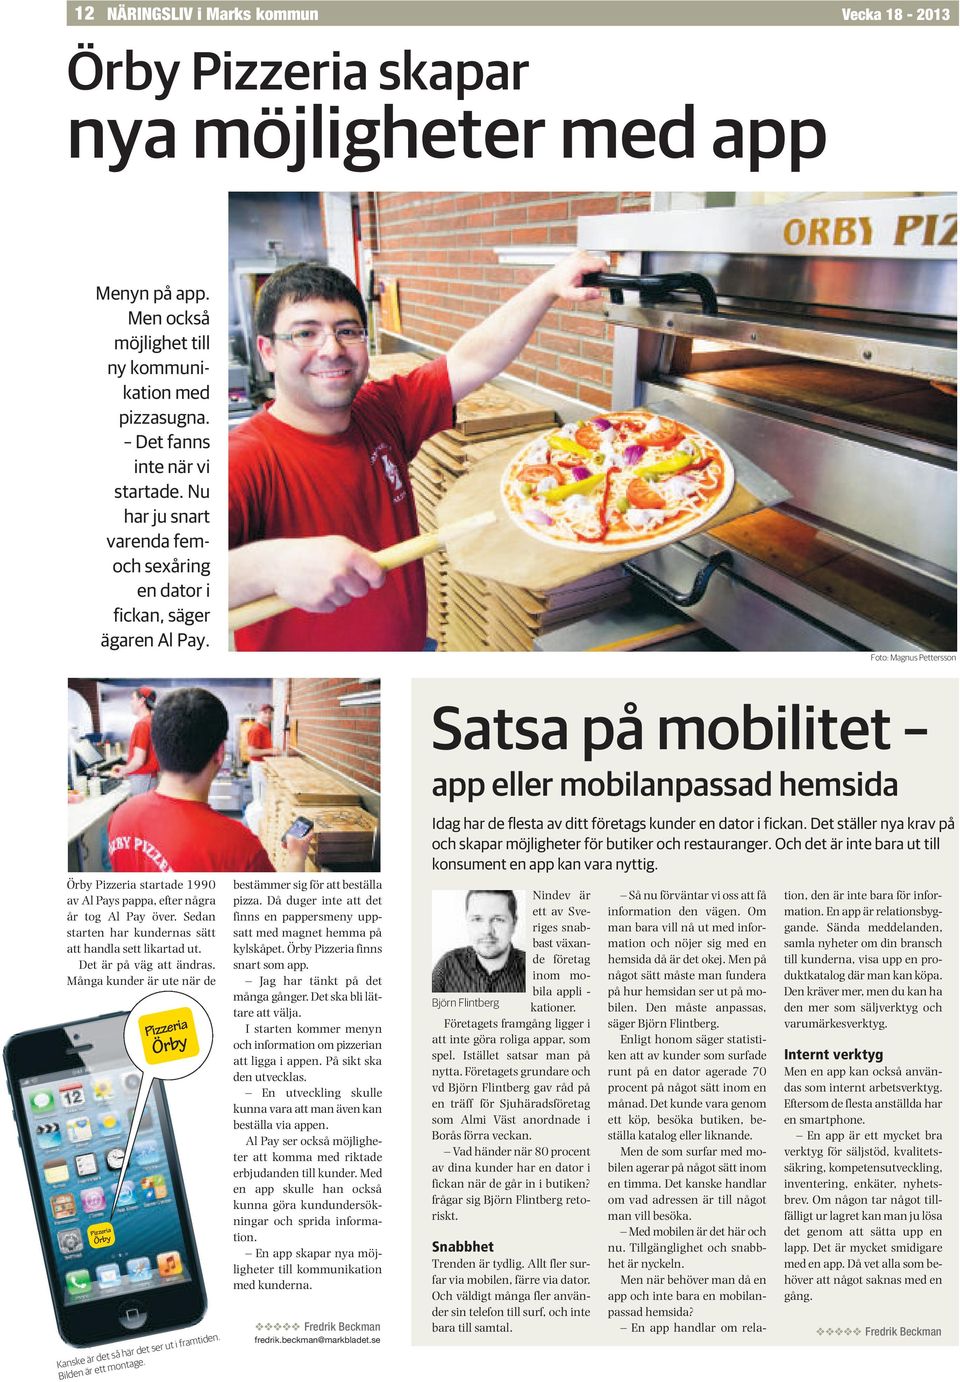 Foto: Magnus Pettersson Satsa på mobilitet app eller mobilanpassad hemsida Örby Pizzeria startade 1990 av Al Pays pappa, efter några år tog Al Pay över.